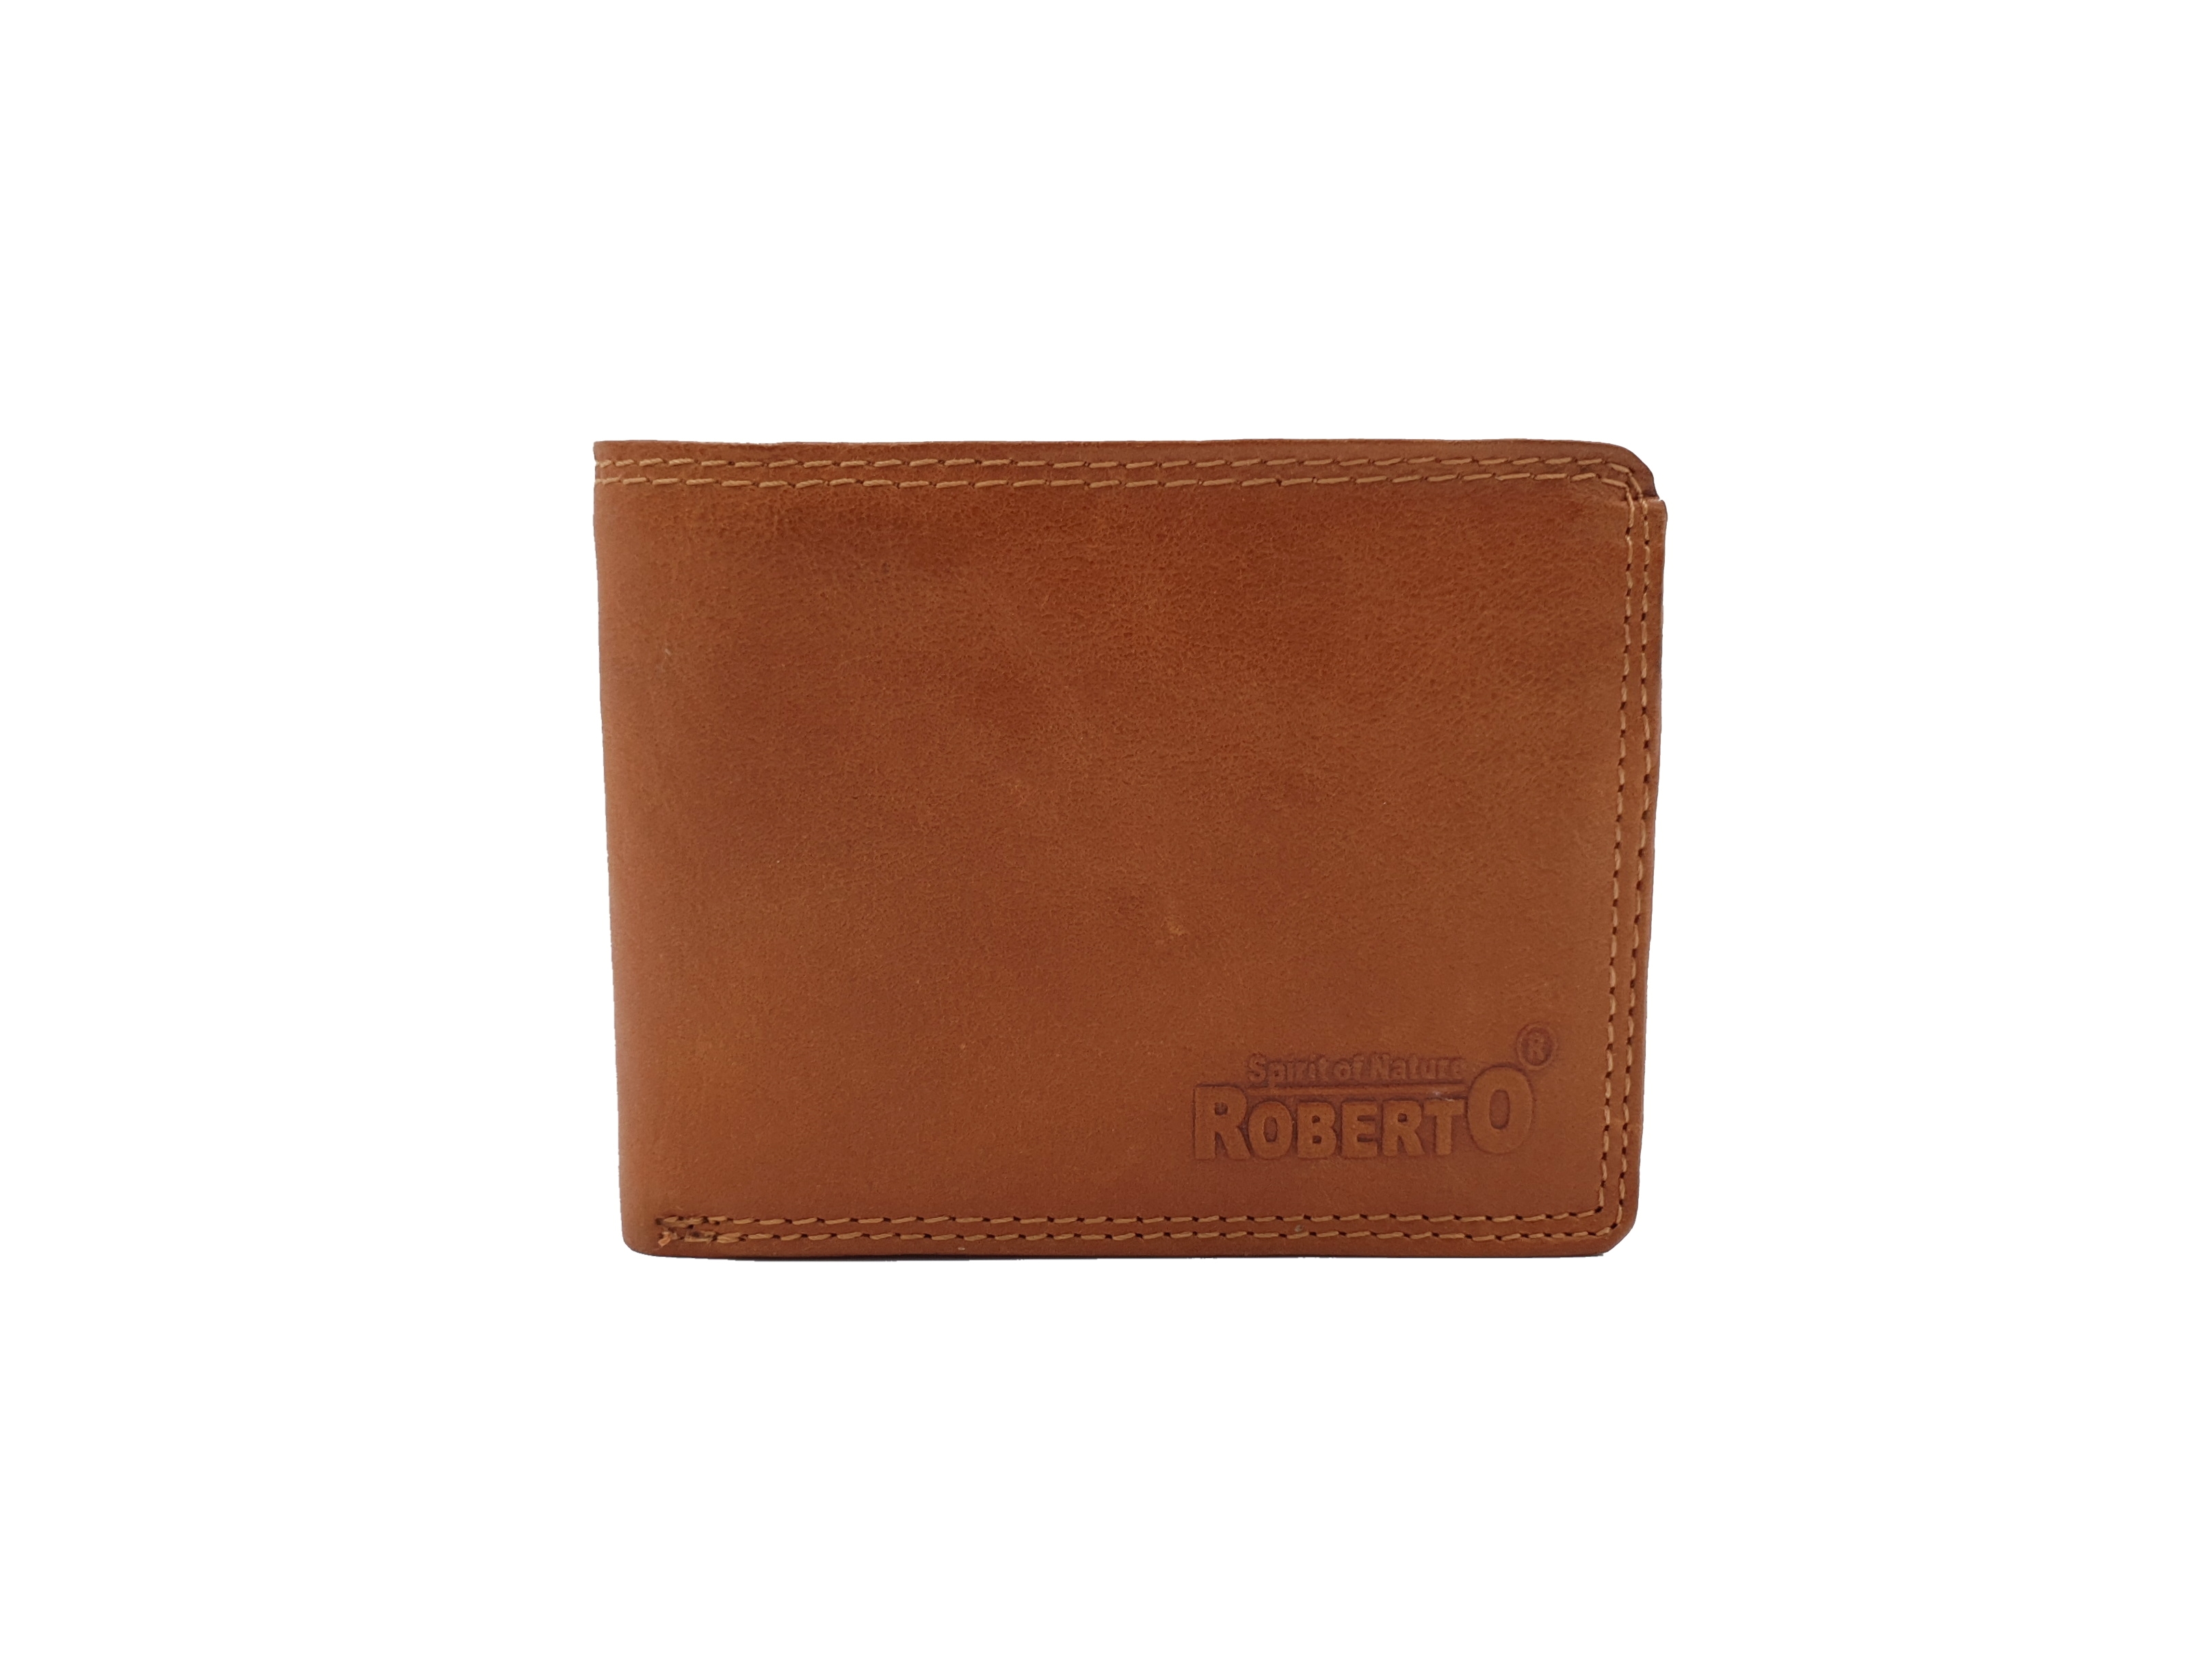 Pánská kožená peněženka Roberto 601 světle hnědá